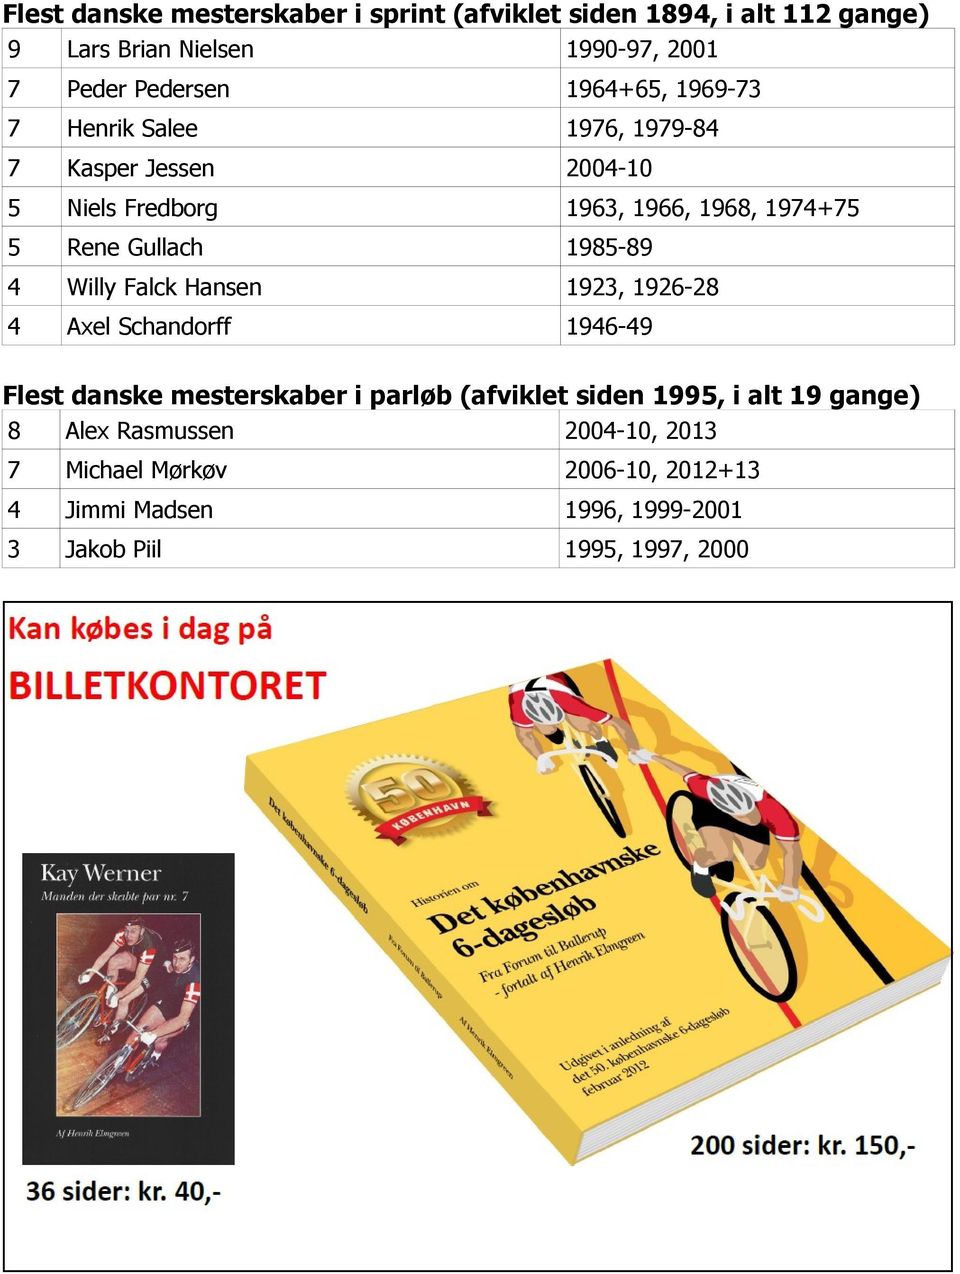 1985-89 4 Willy Falck Hansen 1923, 1926-28 4 Axel Schandorff 1946-49 Flest danske mesterskaber i parløb (afviklet siden 1995, i